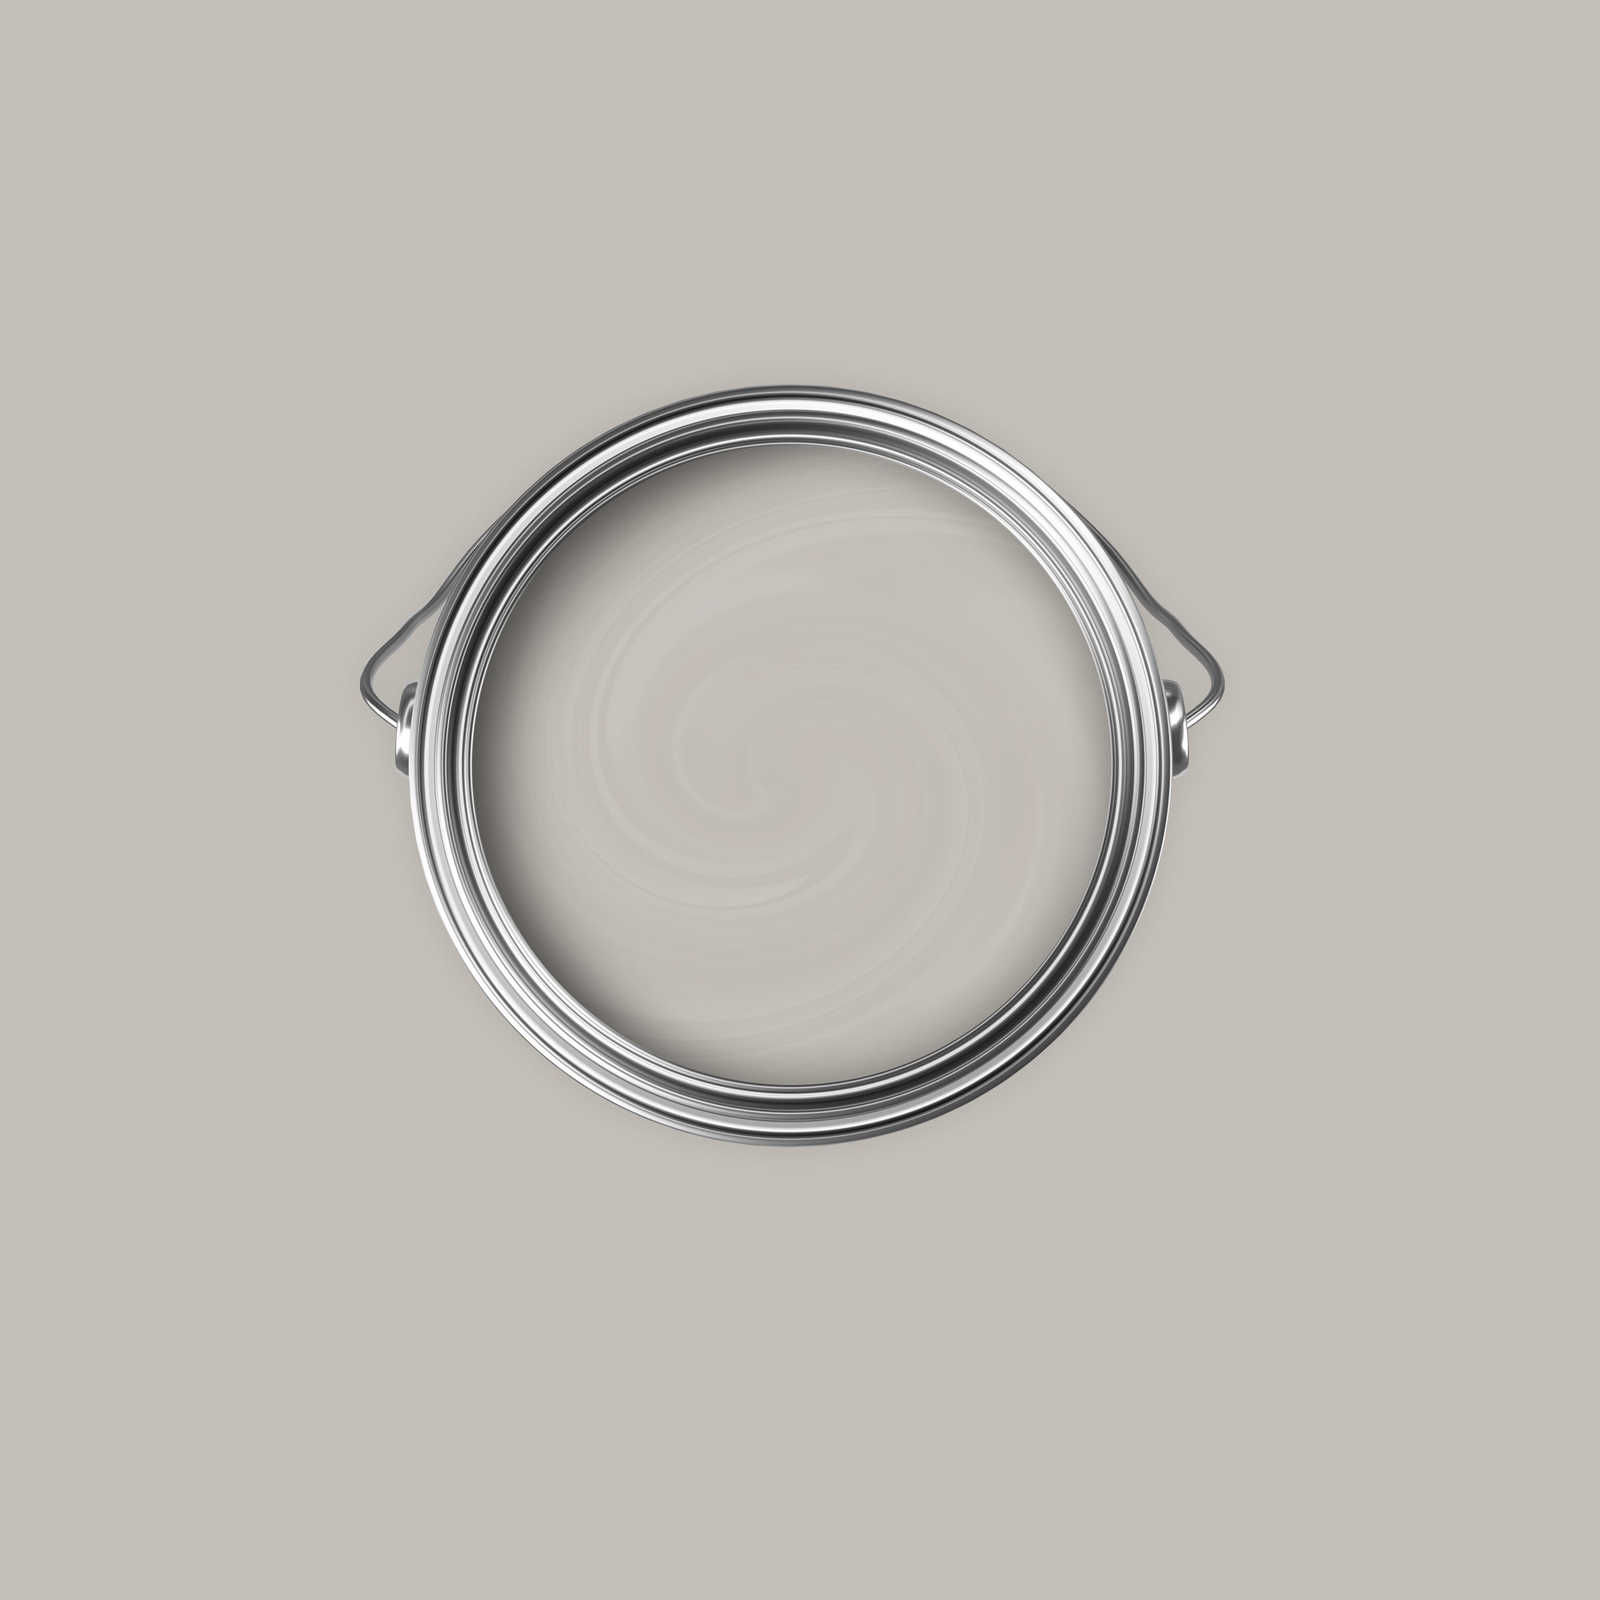             Premium Muurverf zacht zijdegrijs »Creamy Grey« NW111 – 2,5 liter
        